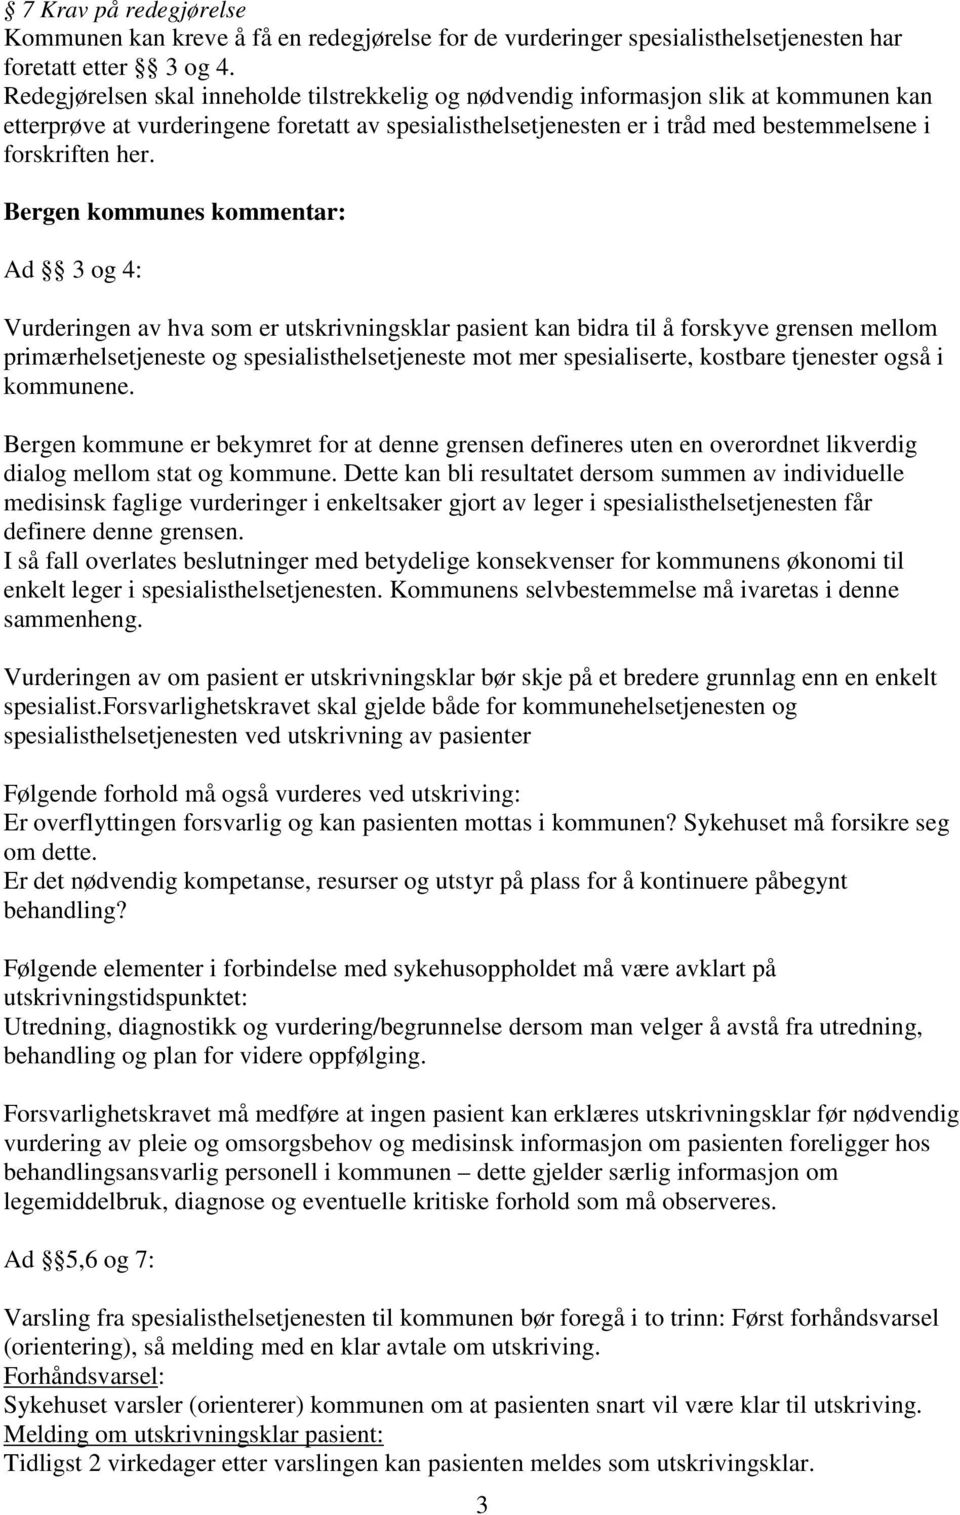 Bergen kommunes kommentar: Ad 3 og 4: Vurderingen av hva som er utskrivningsklar pasient kan bidra til å forskyve grensen mellom primærhelsetjeneste og spesialisthelsetjeneste mot mer spesialiserte,